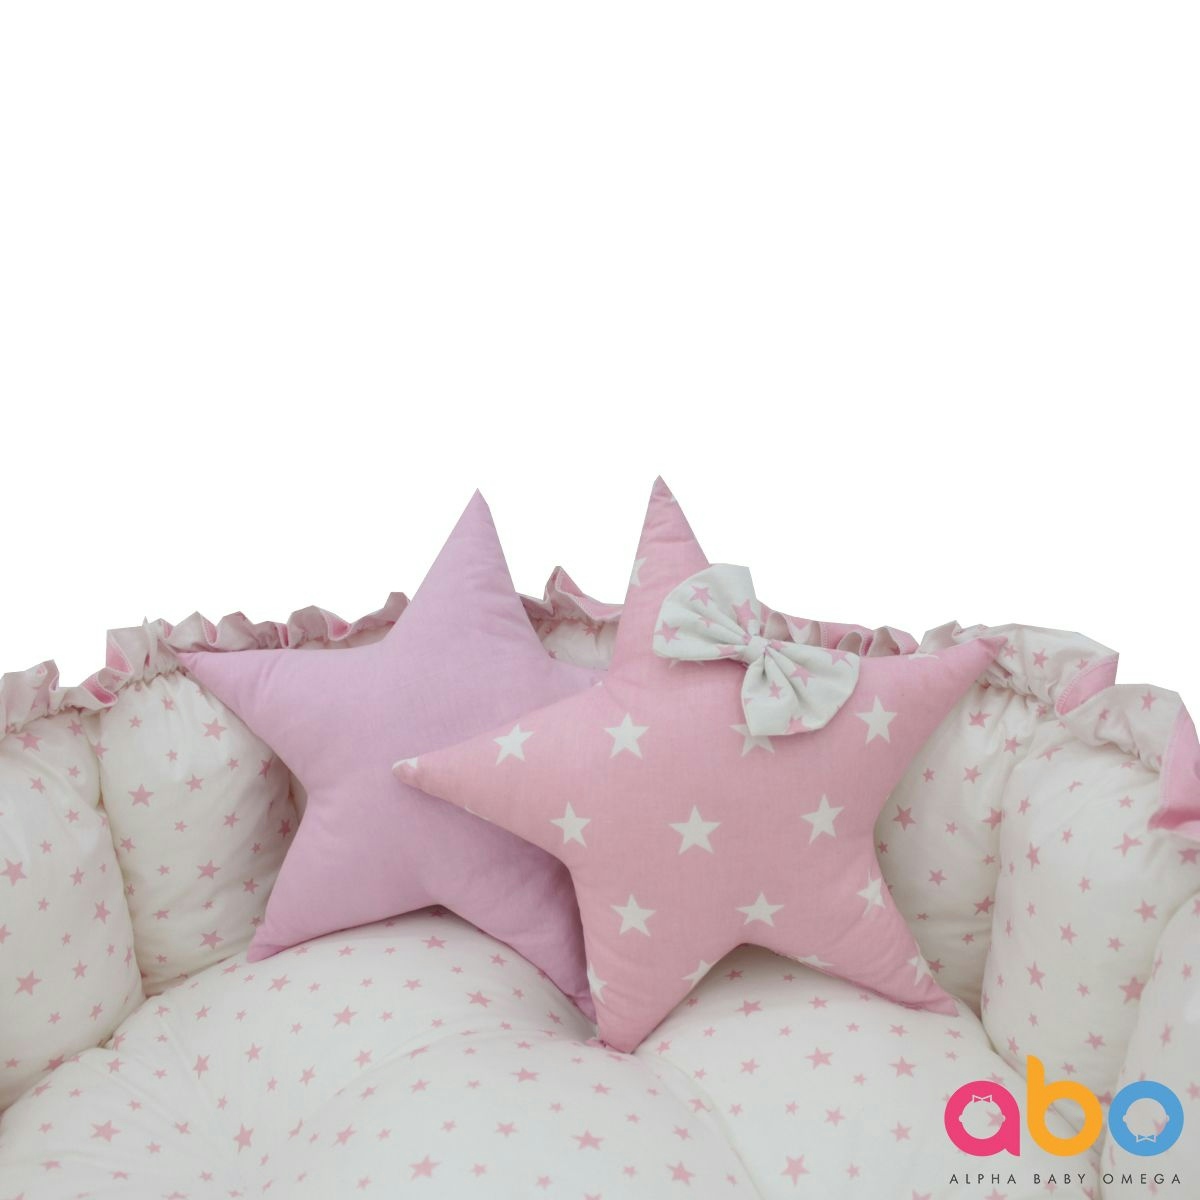 ABO Βρεφική Φωλιά Ύπνου-Χαλάκι Δραστηριοτήτων Pink Stars